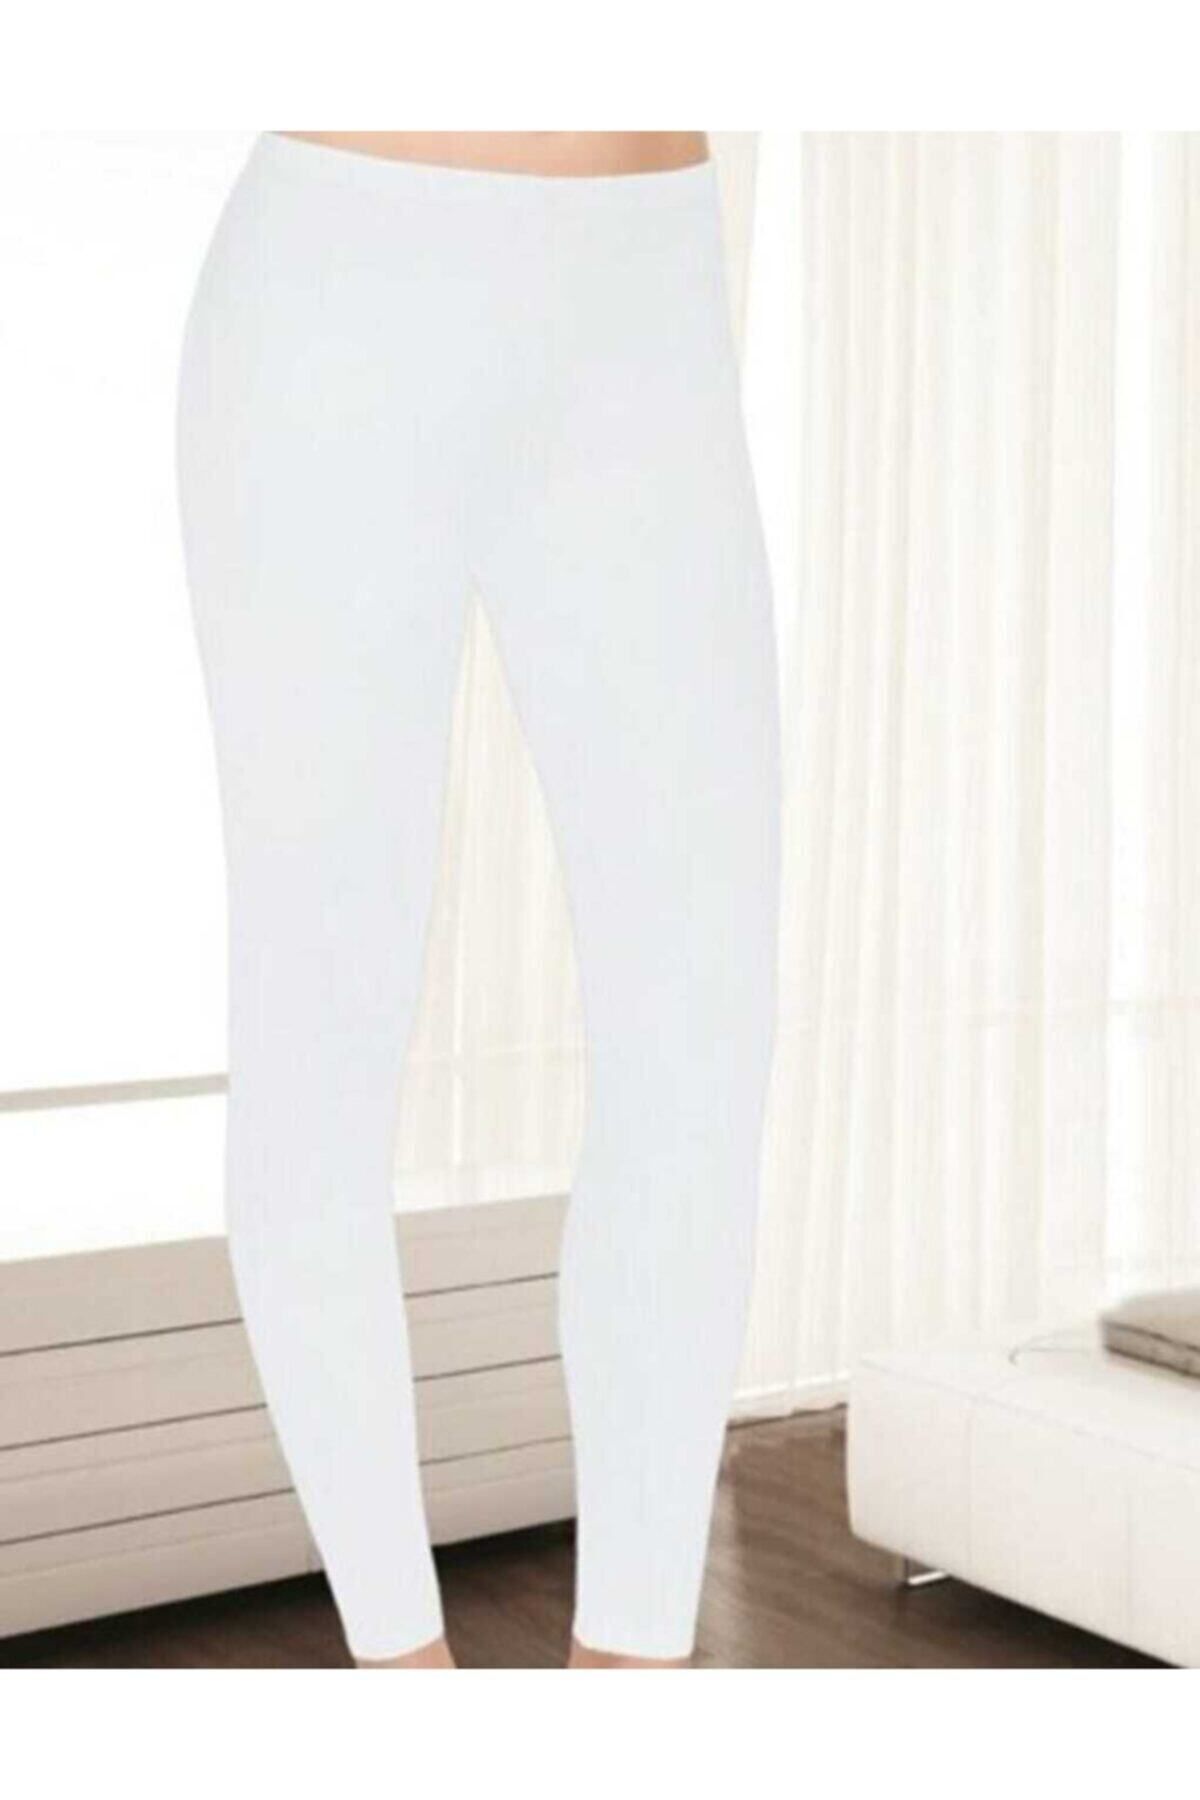 Tutku Elit Kadın 2"li Beyaz Modal Elastan Likralı Penye Uzun Tayt 2101